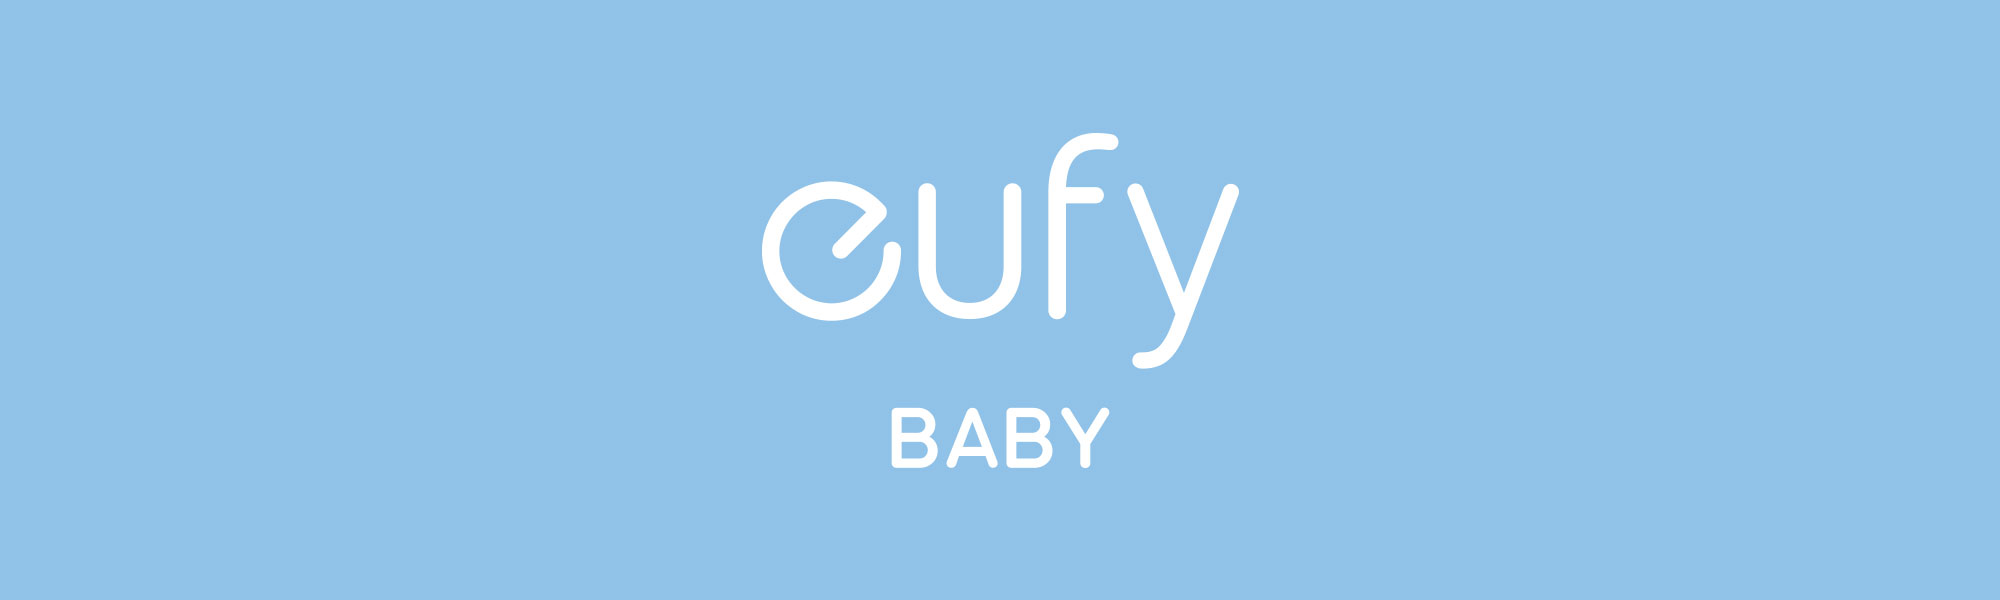 Eufy Baby